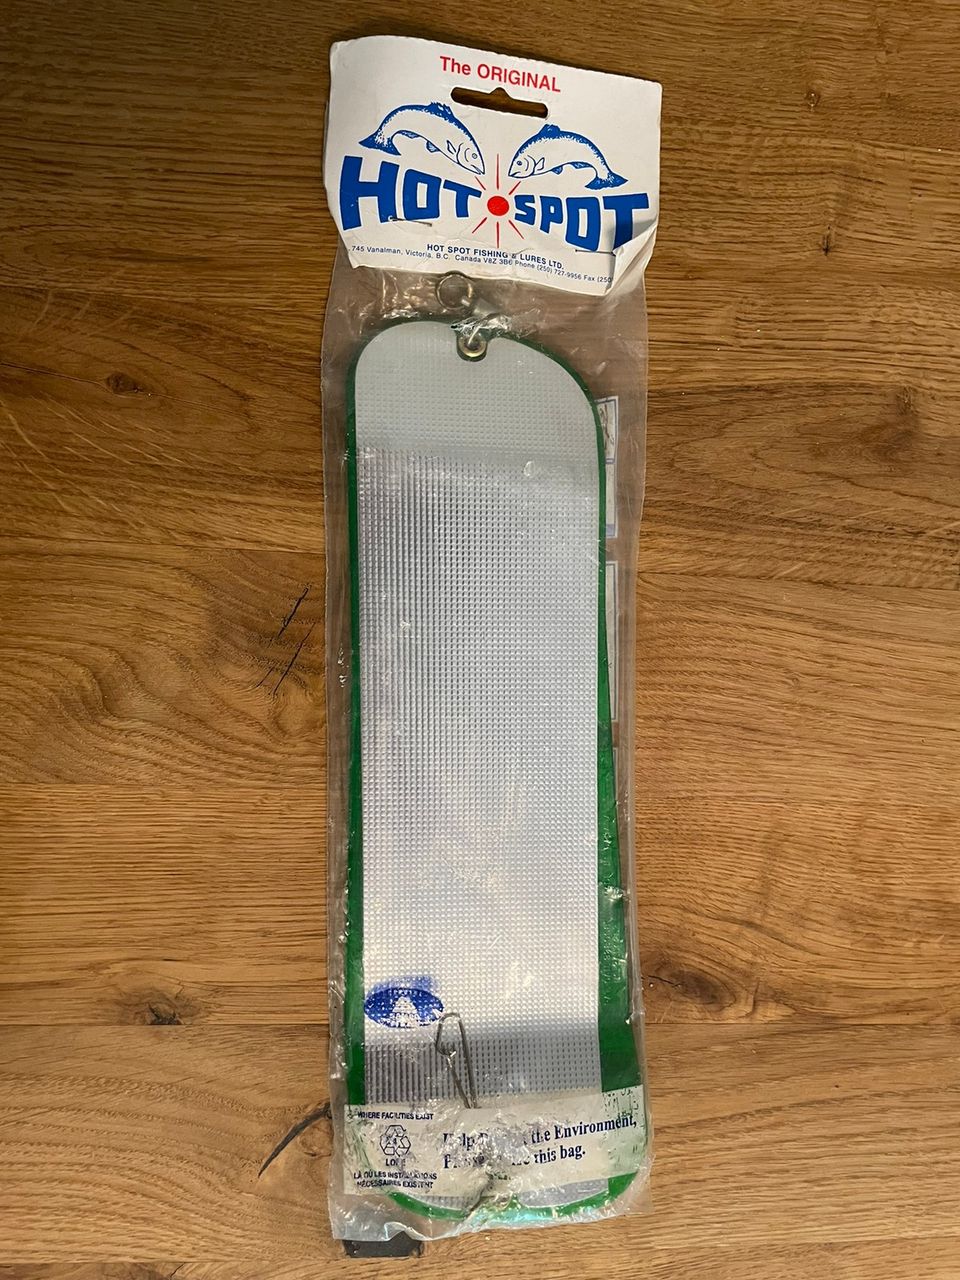 Ho Spot 11” flashereita eli houkutinlevyjä